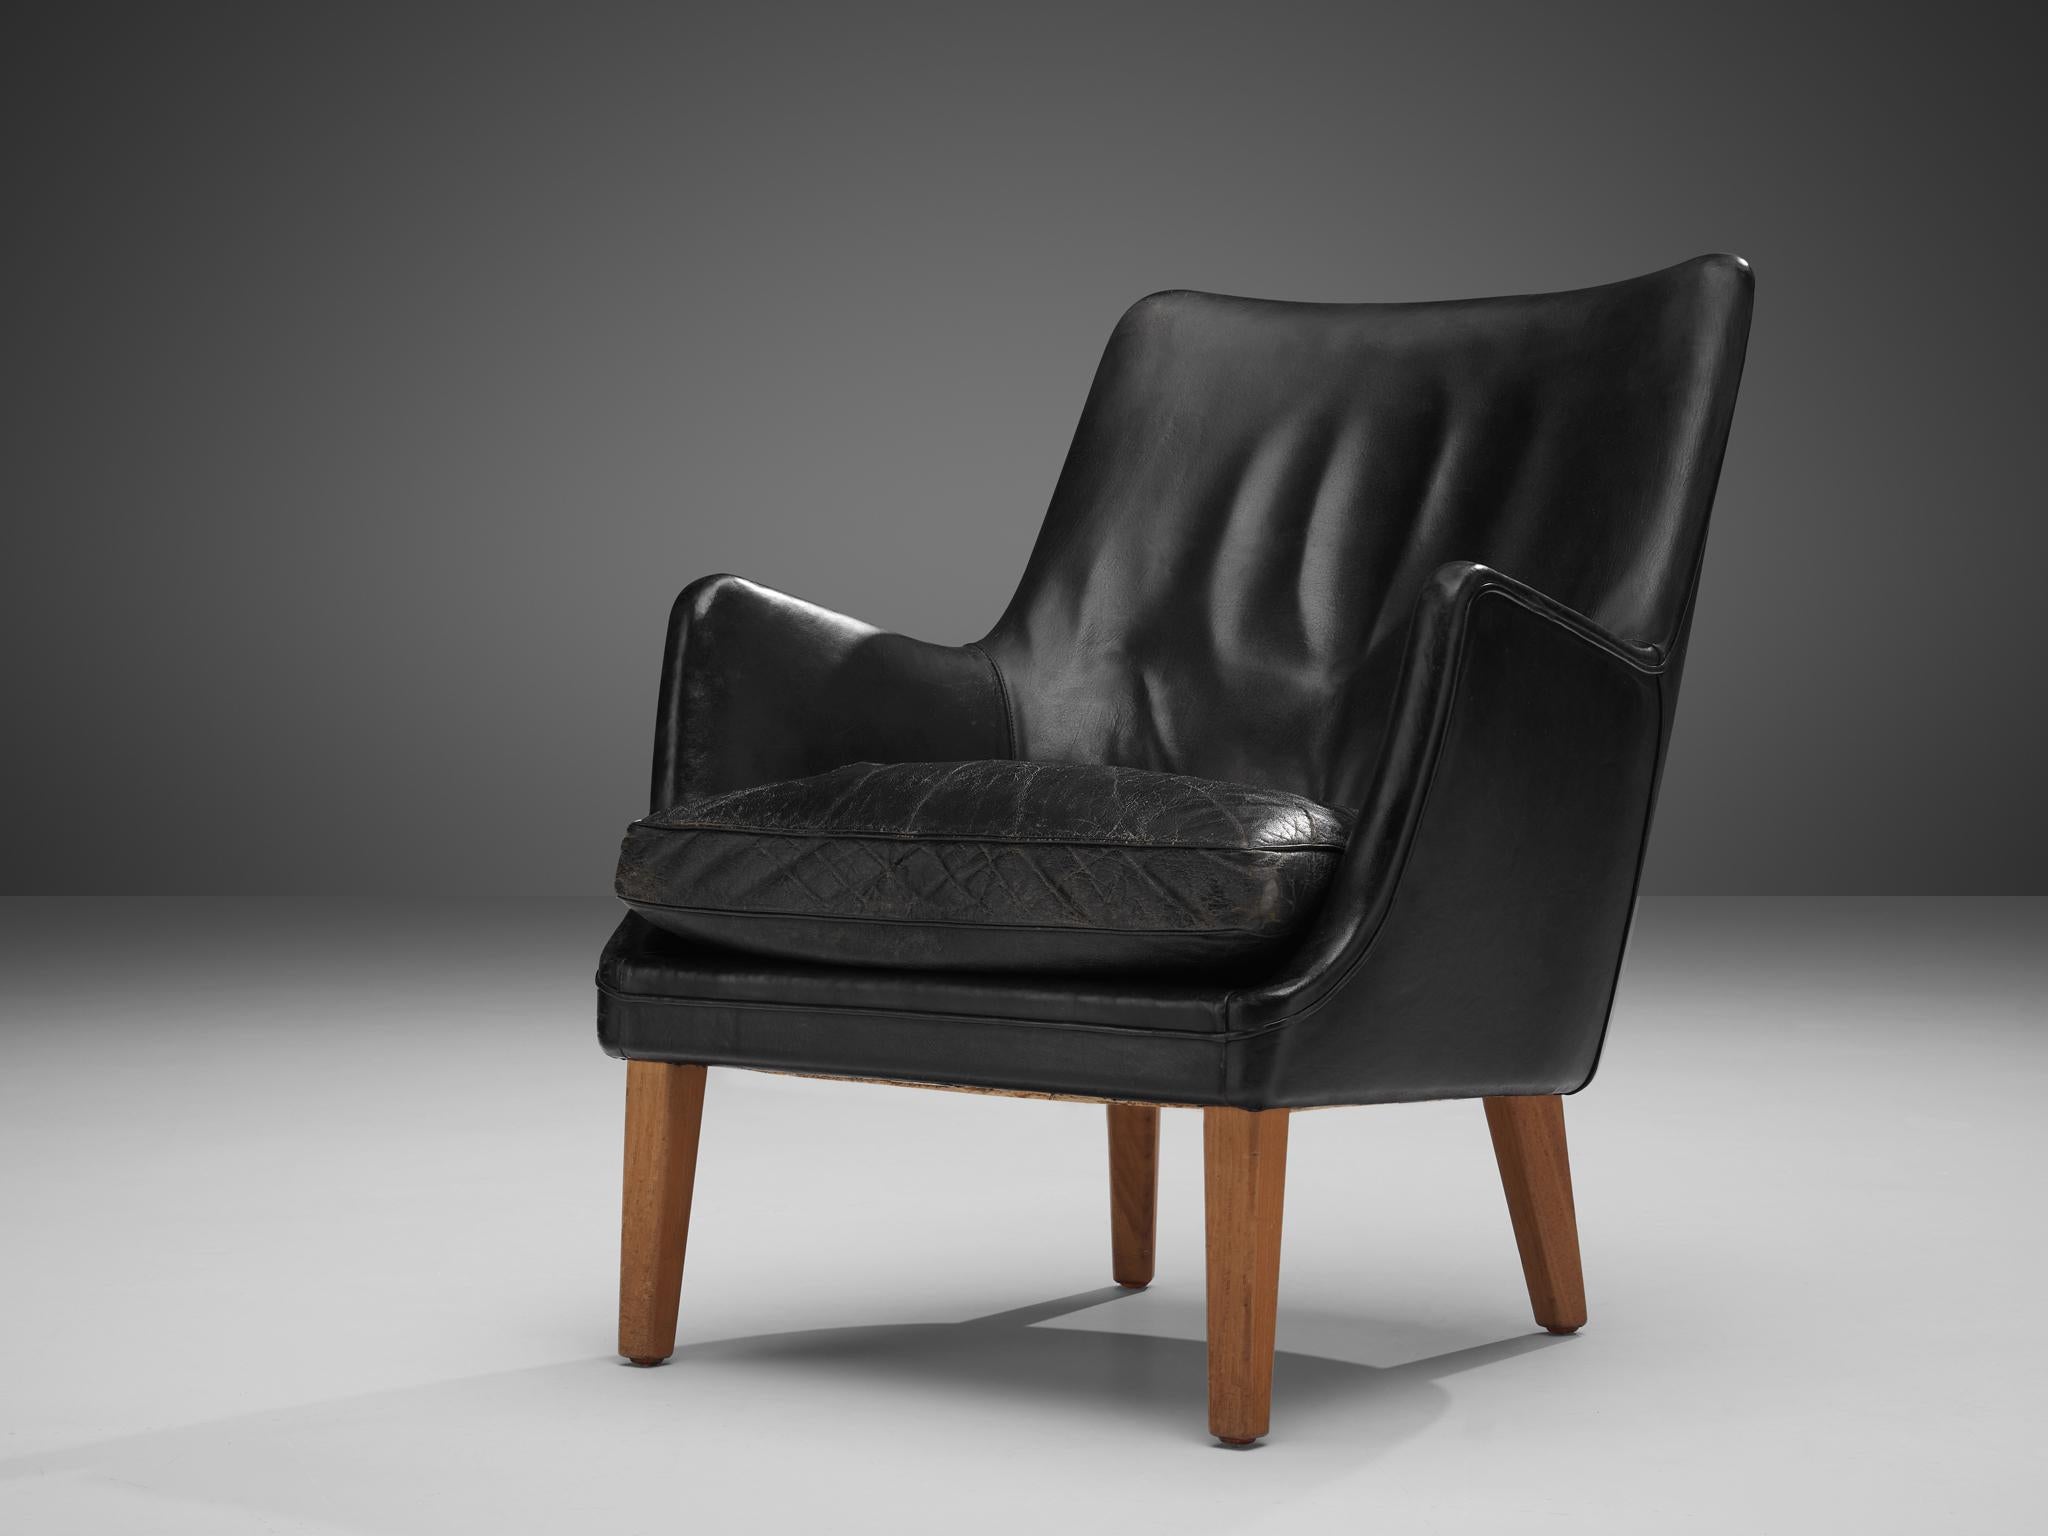 Arne Vodder pour Ivan Schlechter, chaise longue, cuir, teck, Danemark, 1953

Ce design distinctif est l'œuvre du maître danois Arne Vodder et est fabriqué par Ivan Schlechter. L'extérieur de la chaise longue est créé par le dossier haut et incliné